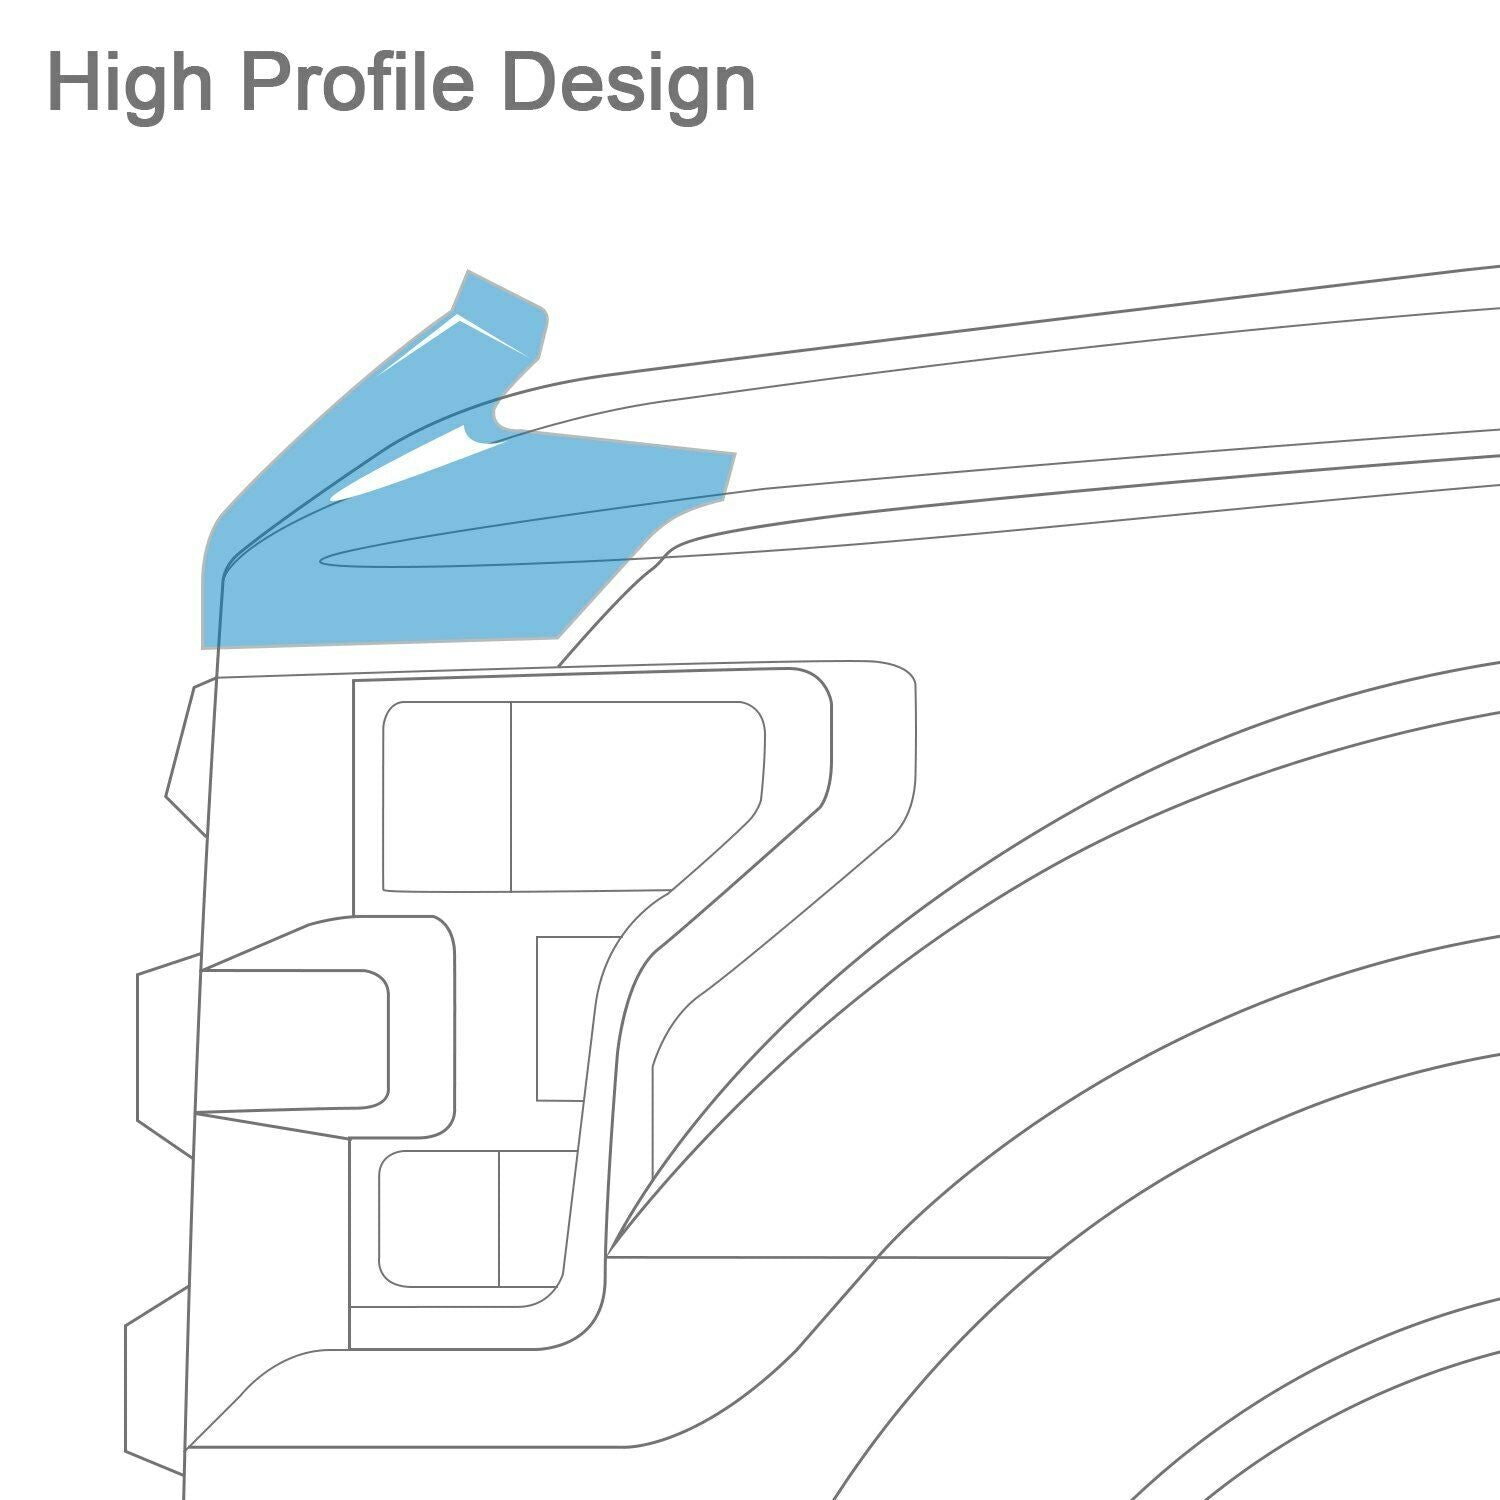 AVS Bugflector Smoke Hood Protector Shield For 2016-2019 Nissan Titan XD - 23108